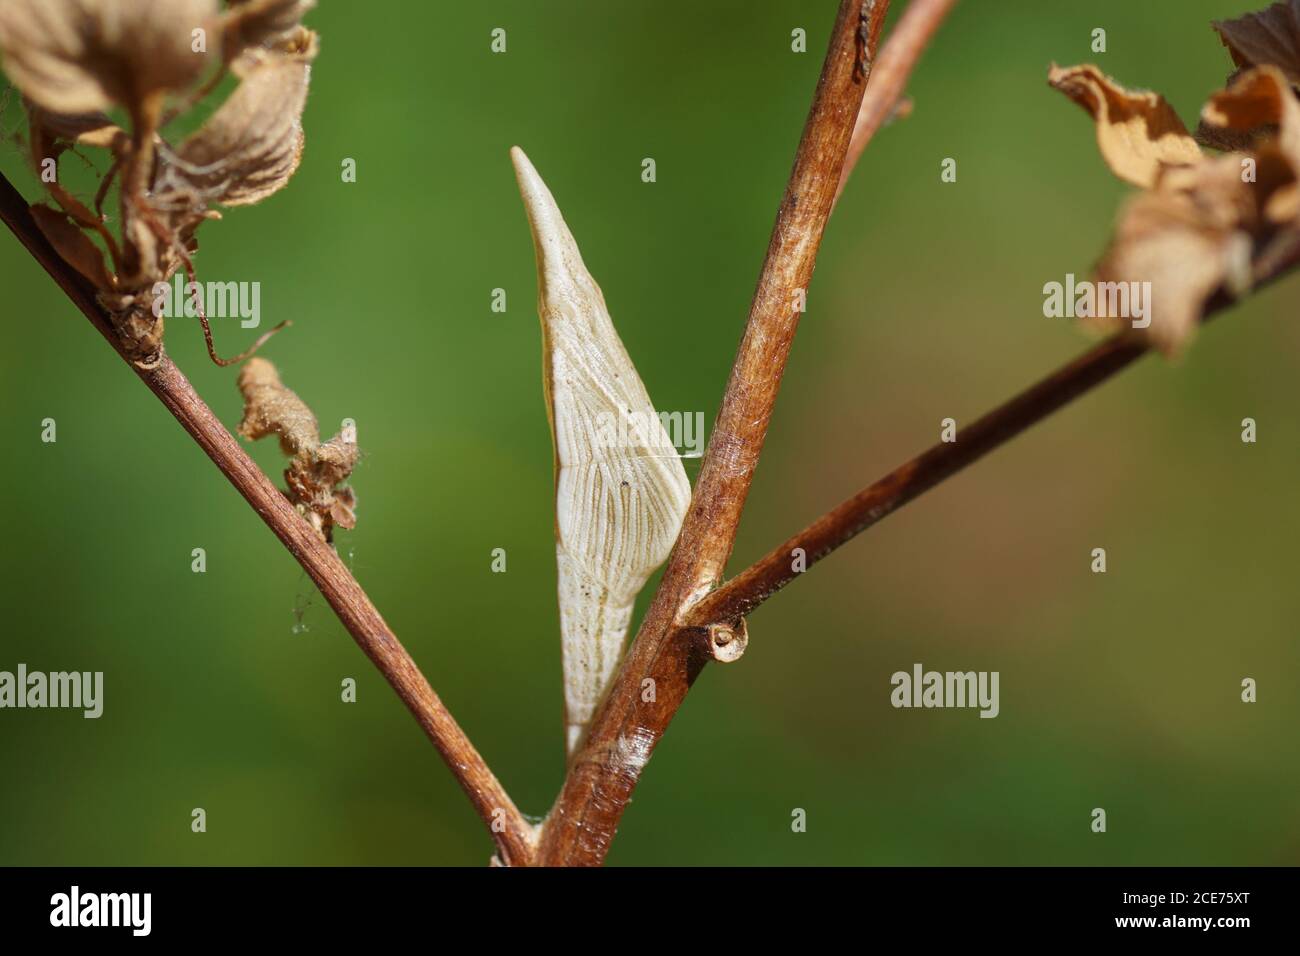 Un pupa de la pointe orange du papillon (anthocharis cardamines). Famille Pieridae. Dans un jardin hollandais. Pays-Bas, juin Banque D'Images